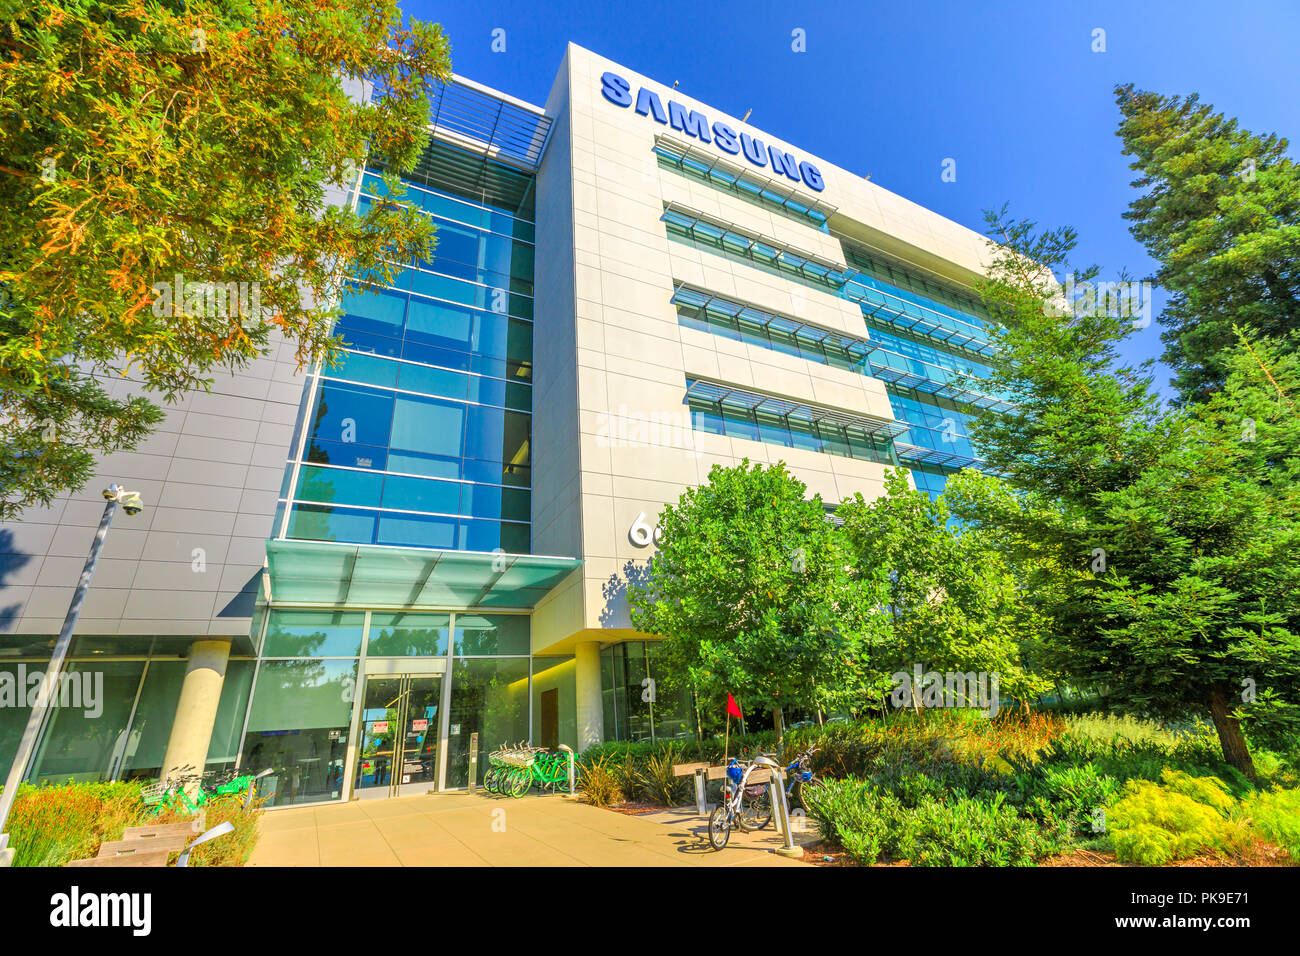 Mountain View, États-Unis - 13 août 2018 : Samsung Amérique Recherche bâtiment dans la Silicon Valley, en Californie. SRA est une division de la recherche et de développer de nouvelles technologies de Samsung. Banque D'Images